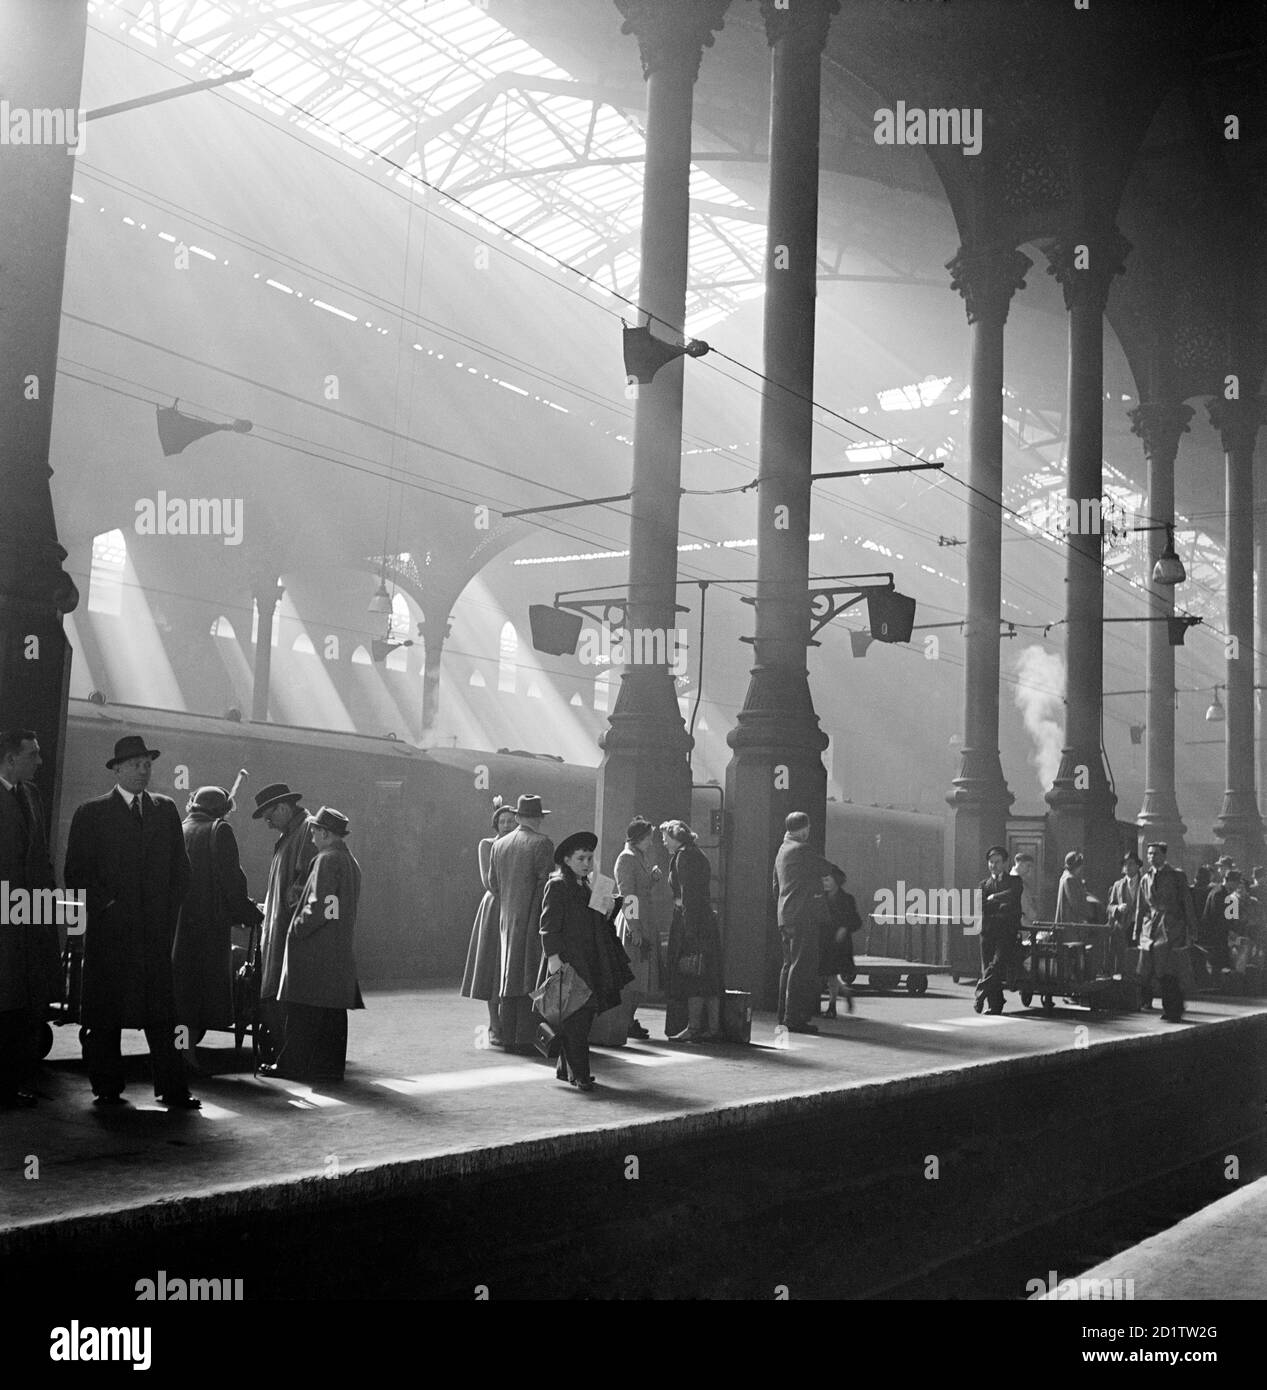 LIVERPOOL STREET STATION, LONDON. Innenansicht. Passagiere, die auf einen Zug auf einem Bahnsteig am Bahnhof Liverpool Street warten. Fotografiert von John Gay. Datumsbereich: 1947-1948. Stockfoto